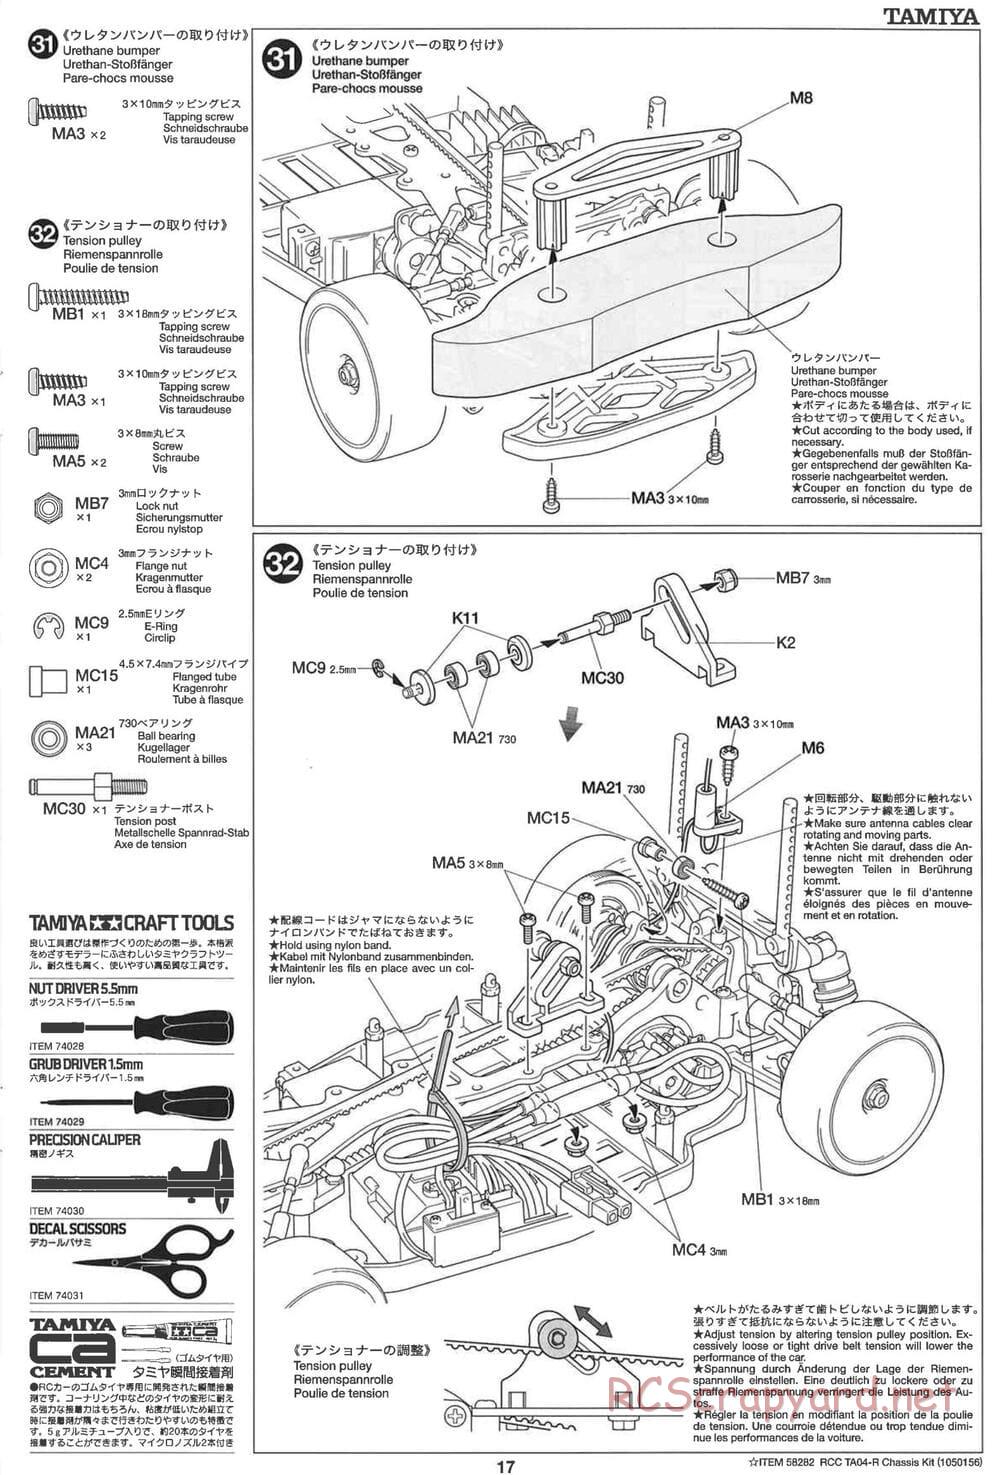 Tamiya - TA-04R Chassis - Manual - Page 17